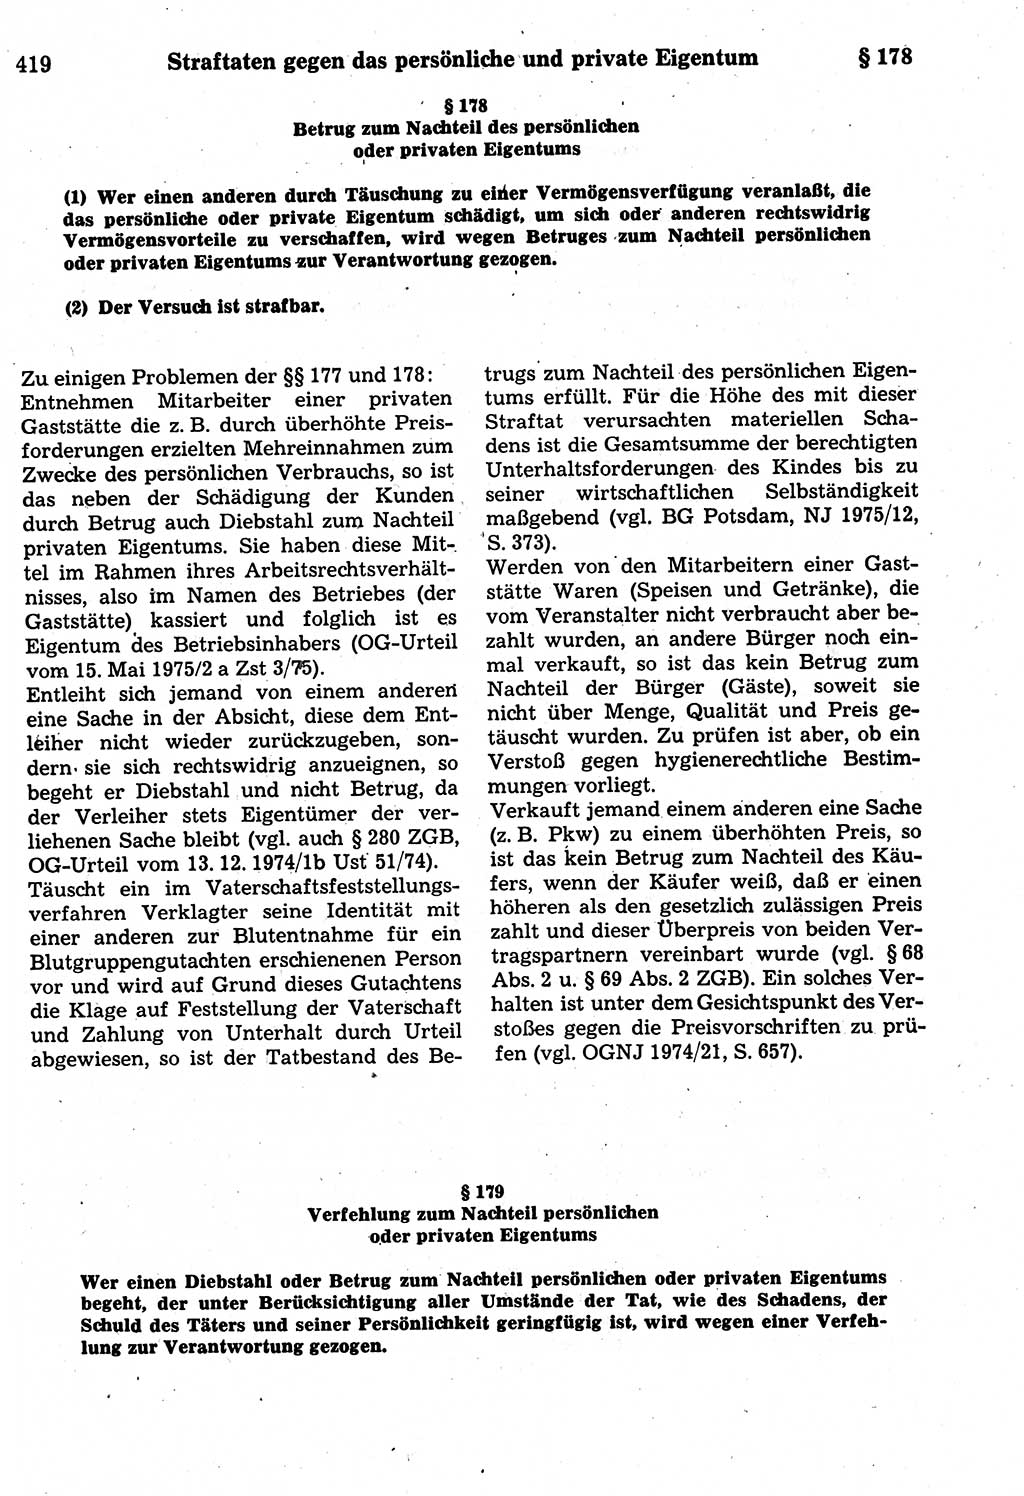 Strafrecht der Deutschen Demokratischen Republik (DDR), Kommentar zum Strafgesetzbuch (StGB) 1987, Seite 419 (Strafr. DDR Komm. StGB 1987, S. 419)